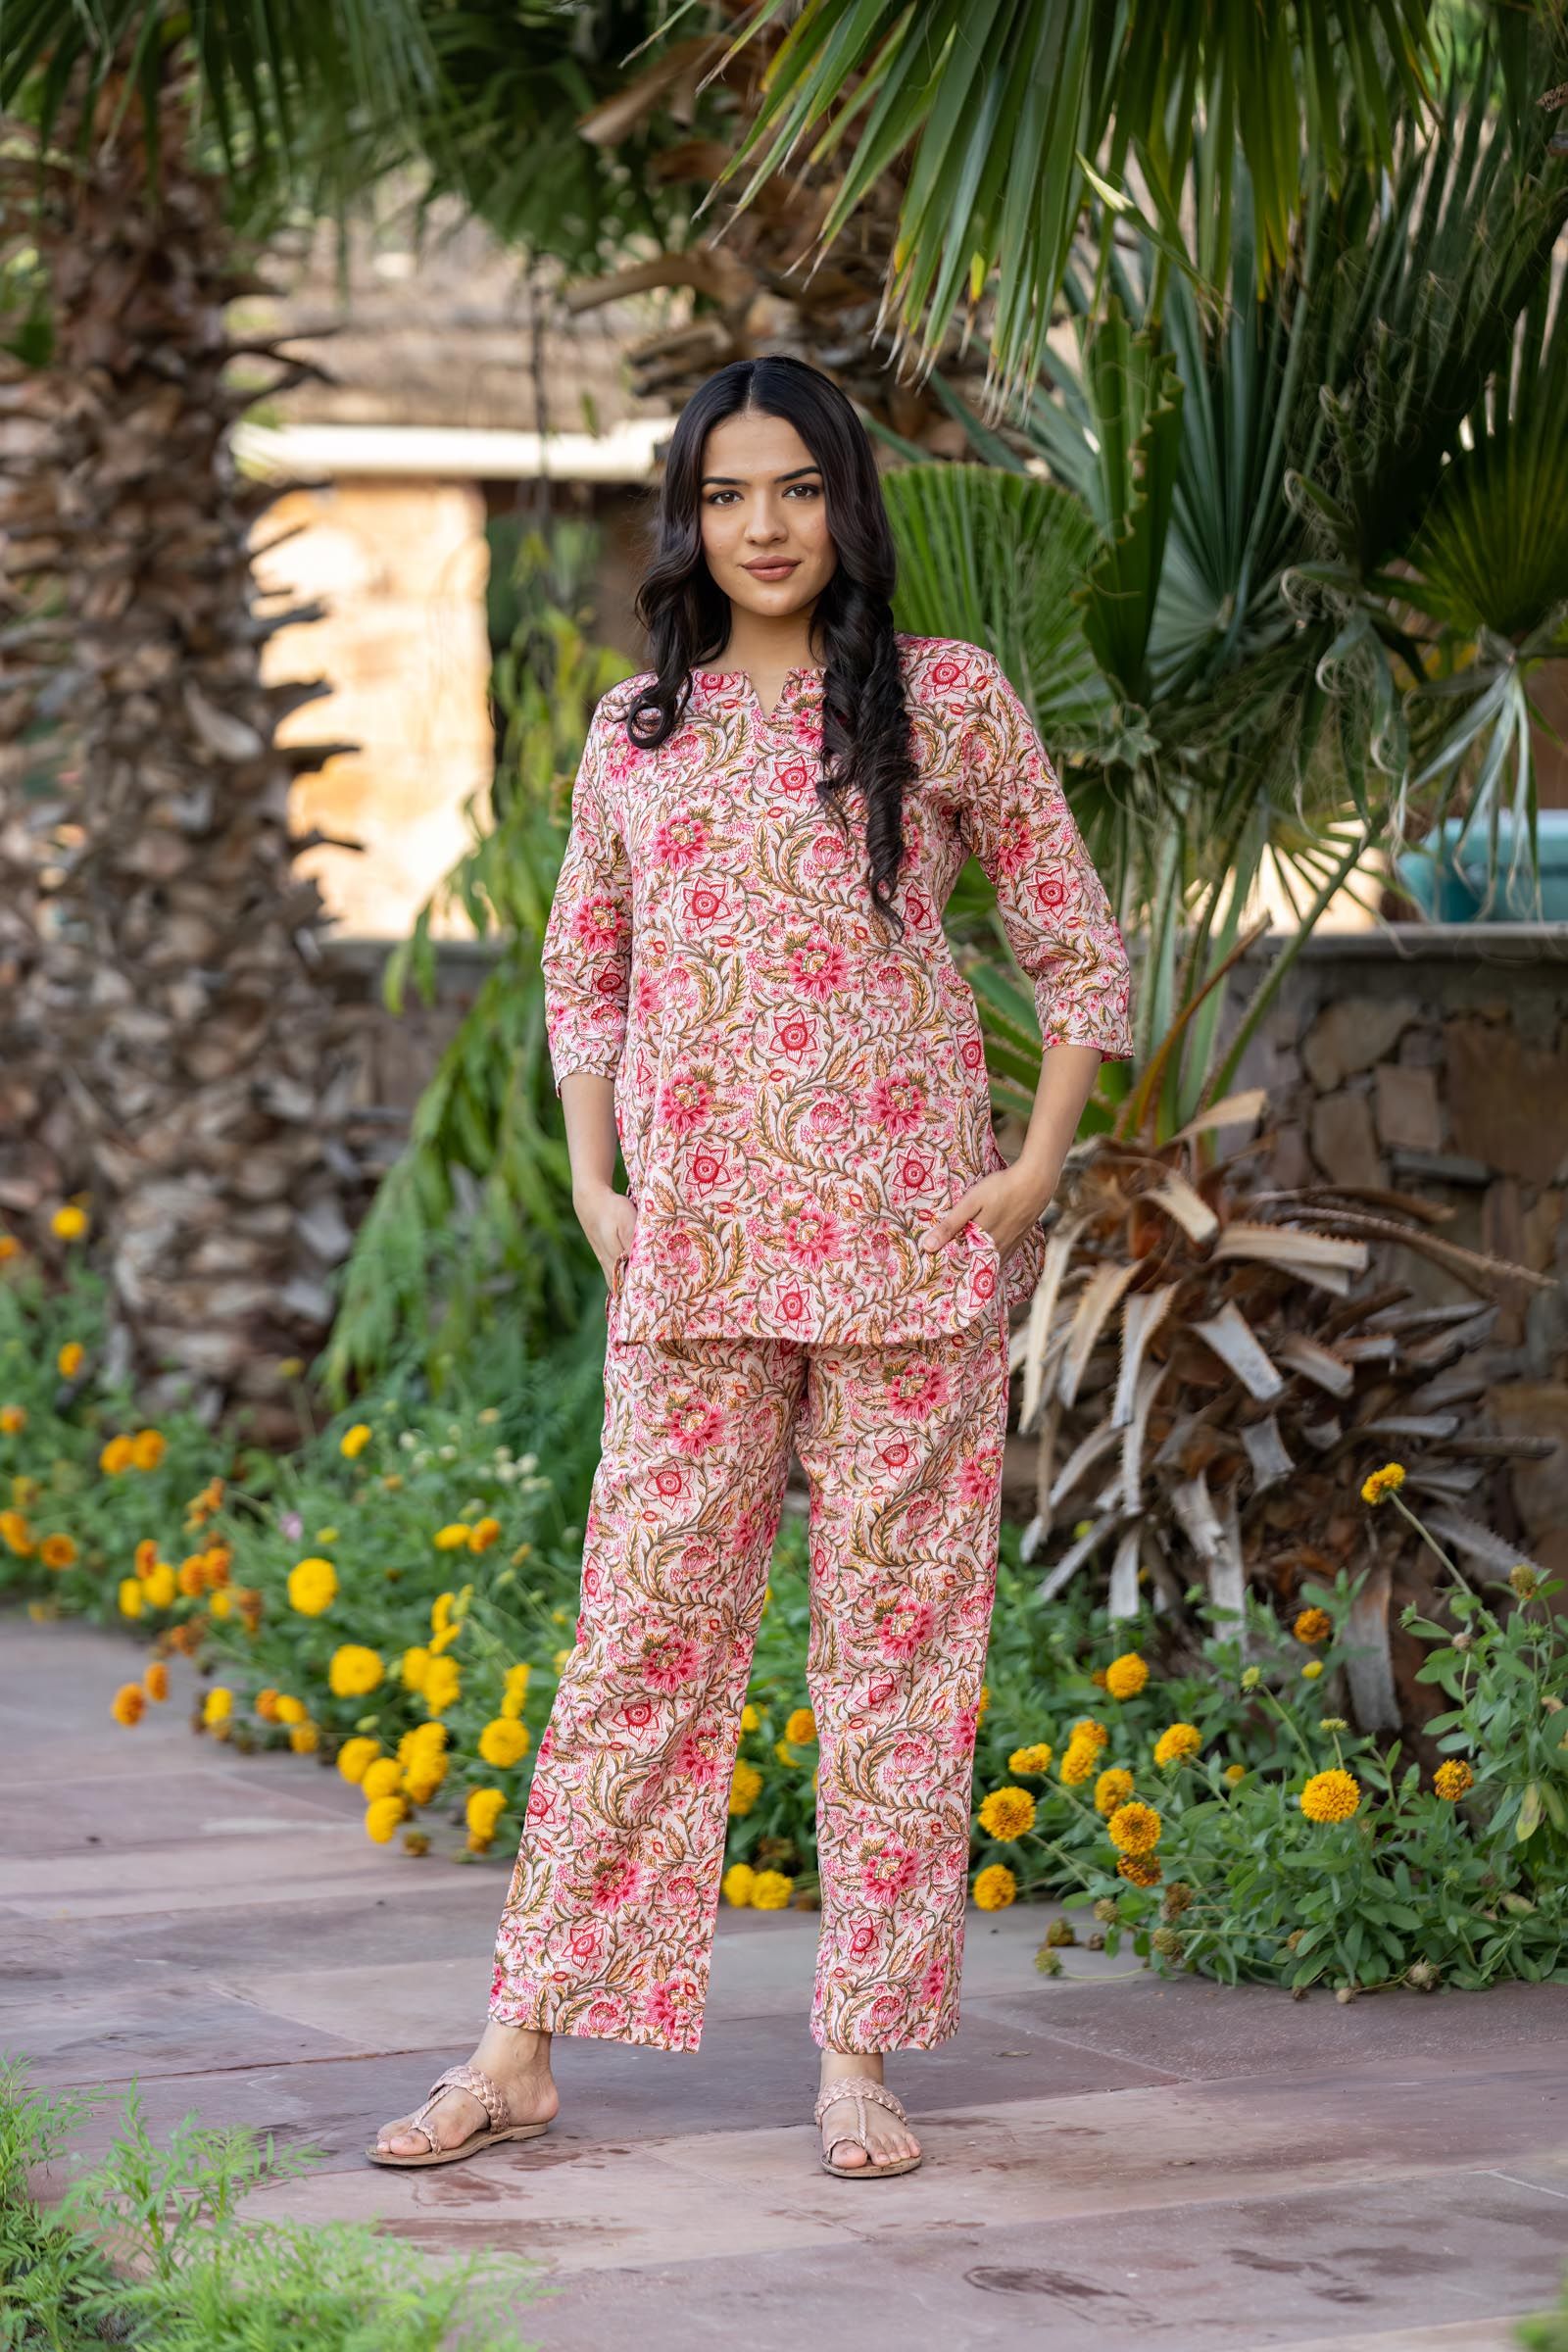 Buy PLAY LOUNGEWEAR Women's Satin Plain/Solid Top and Pyjama Set, Shirt  and Pyjama